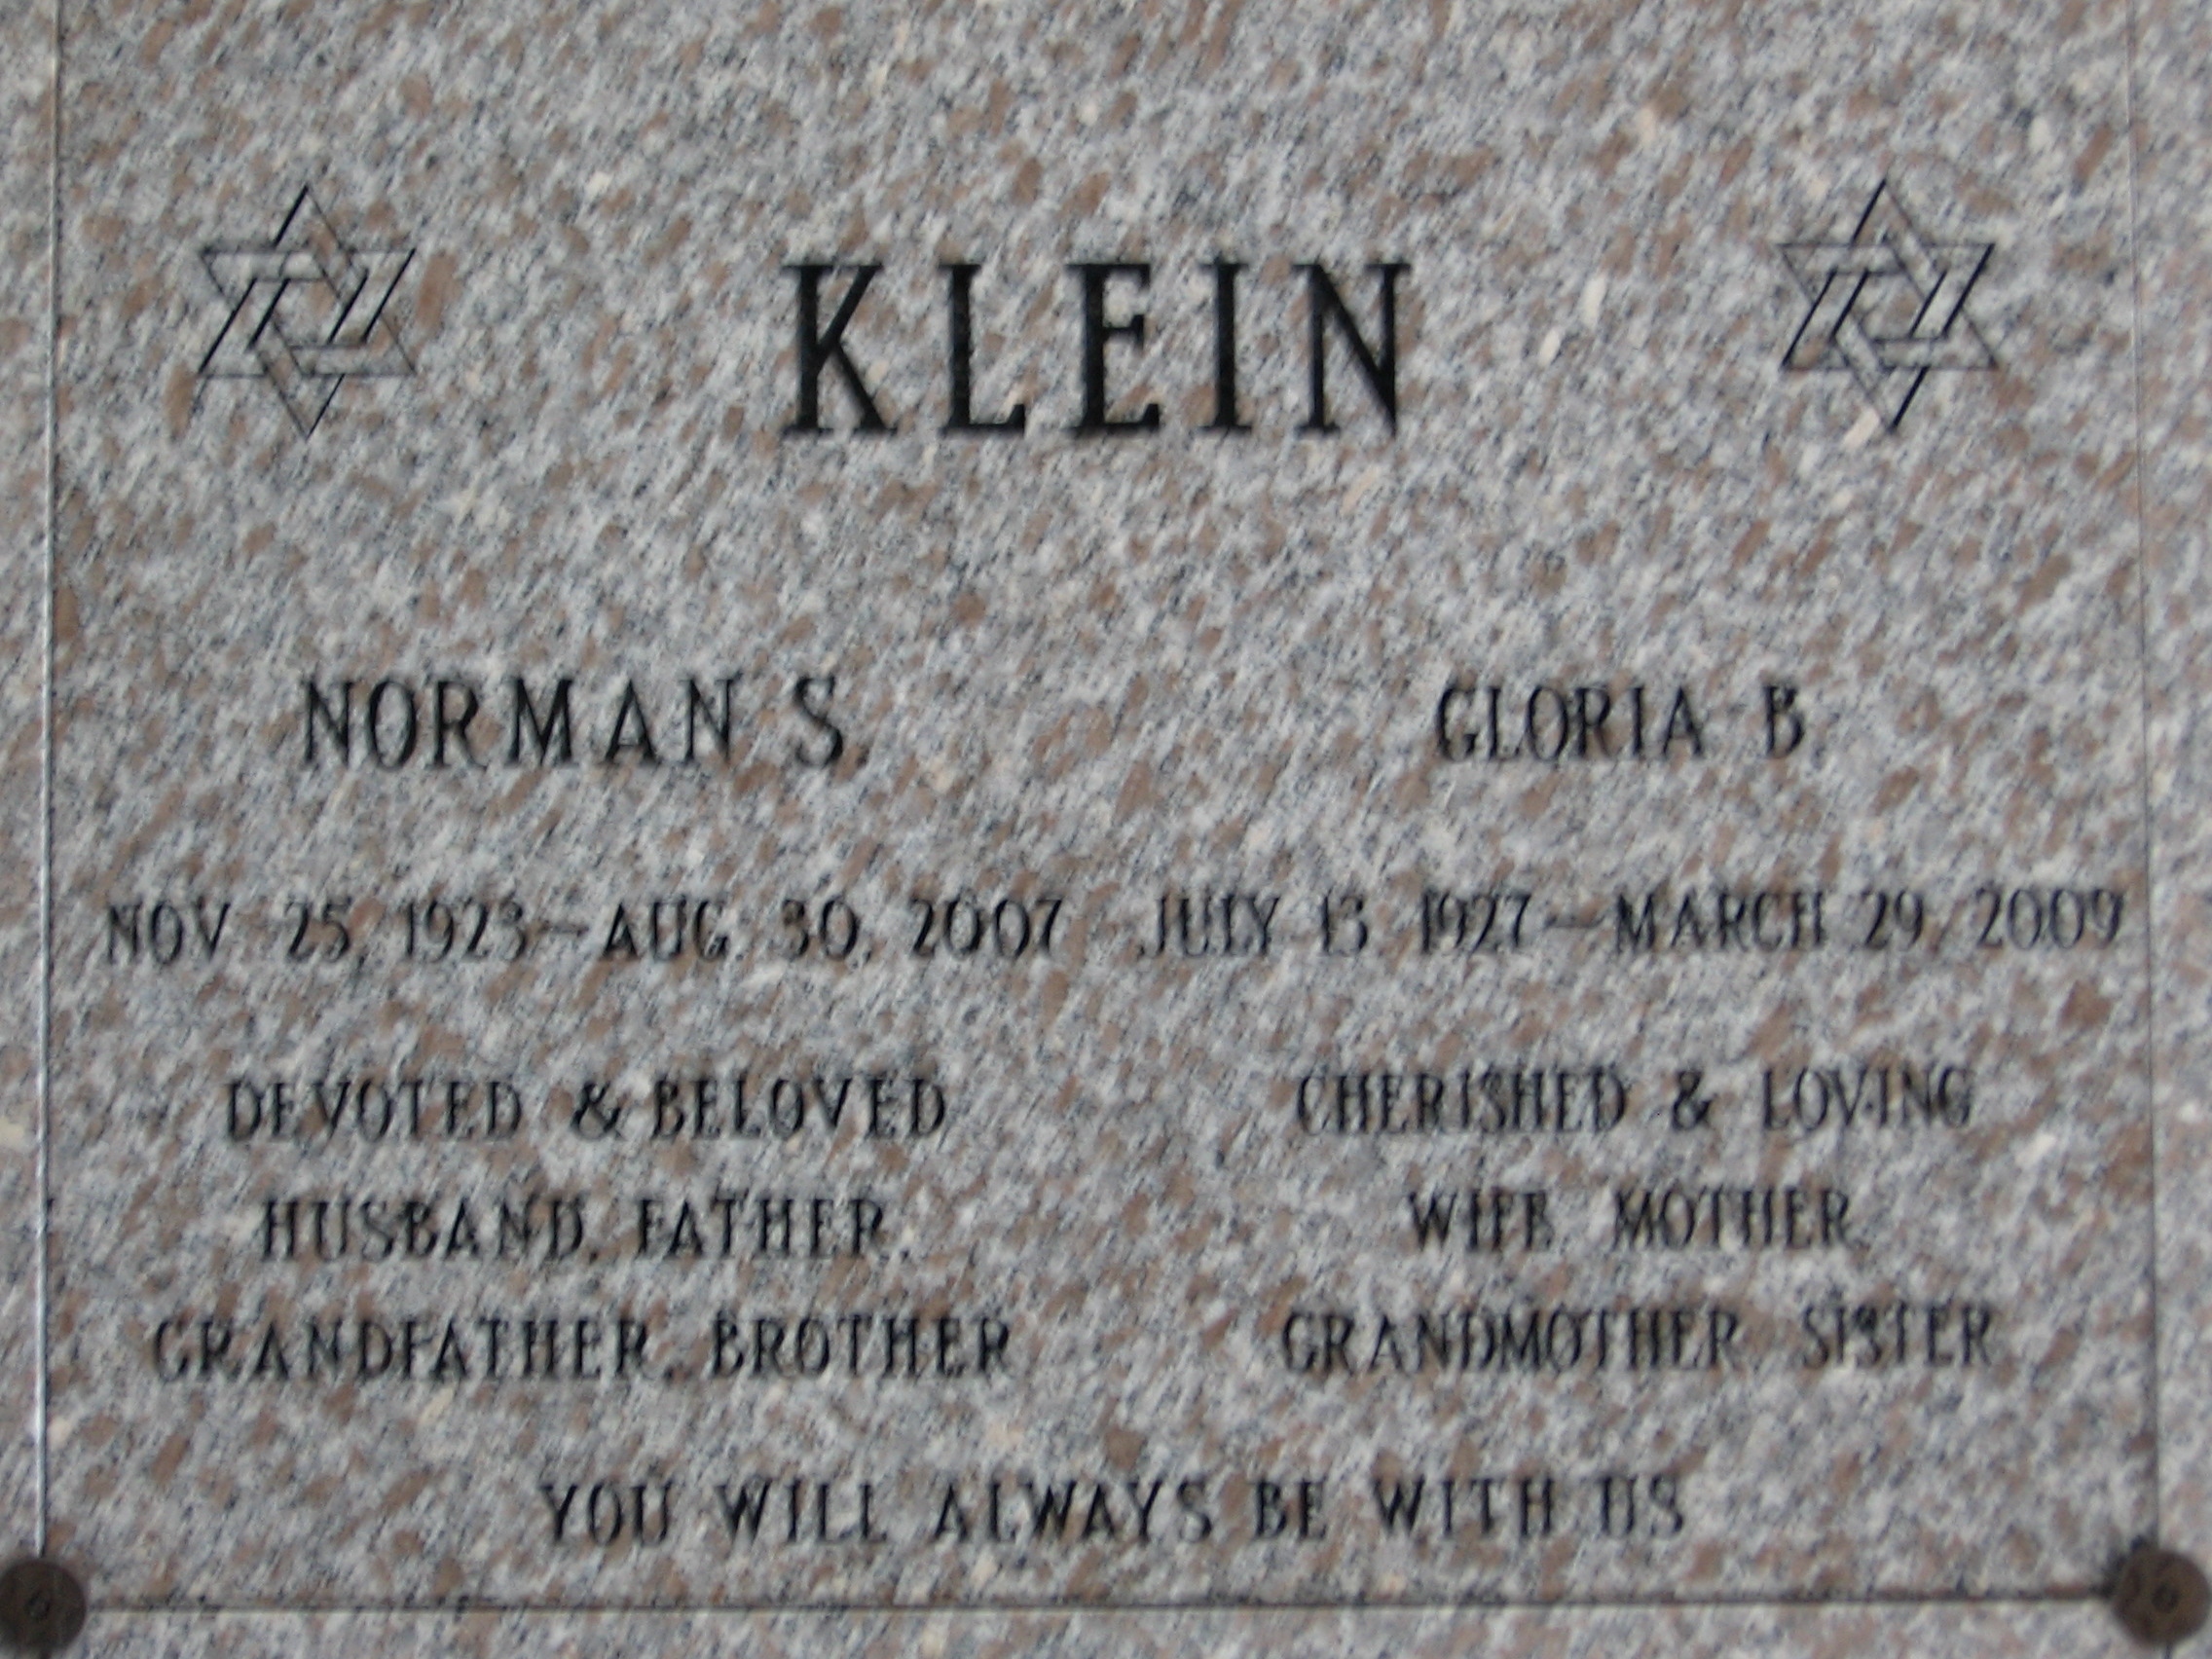 Norman S Klein